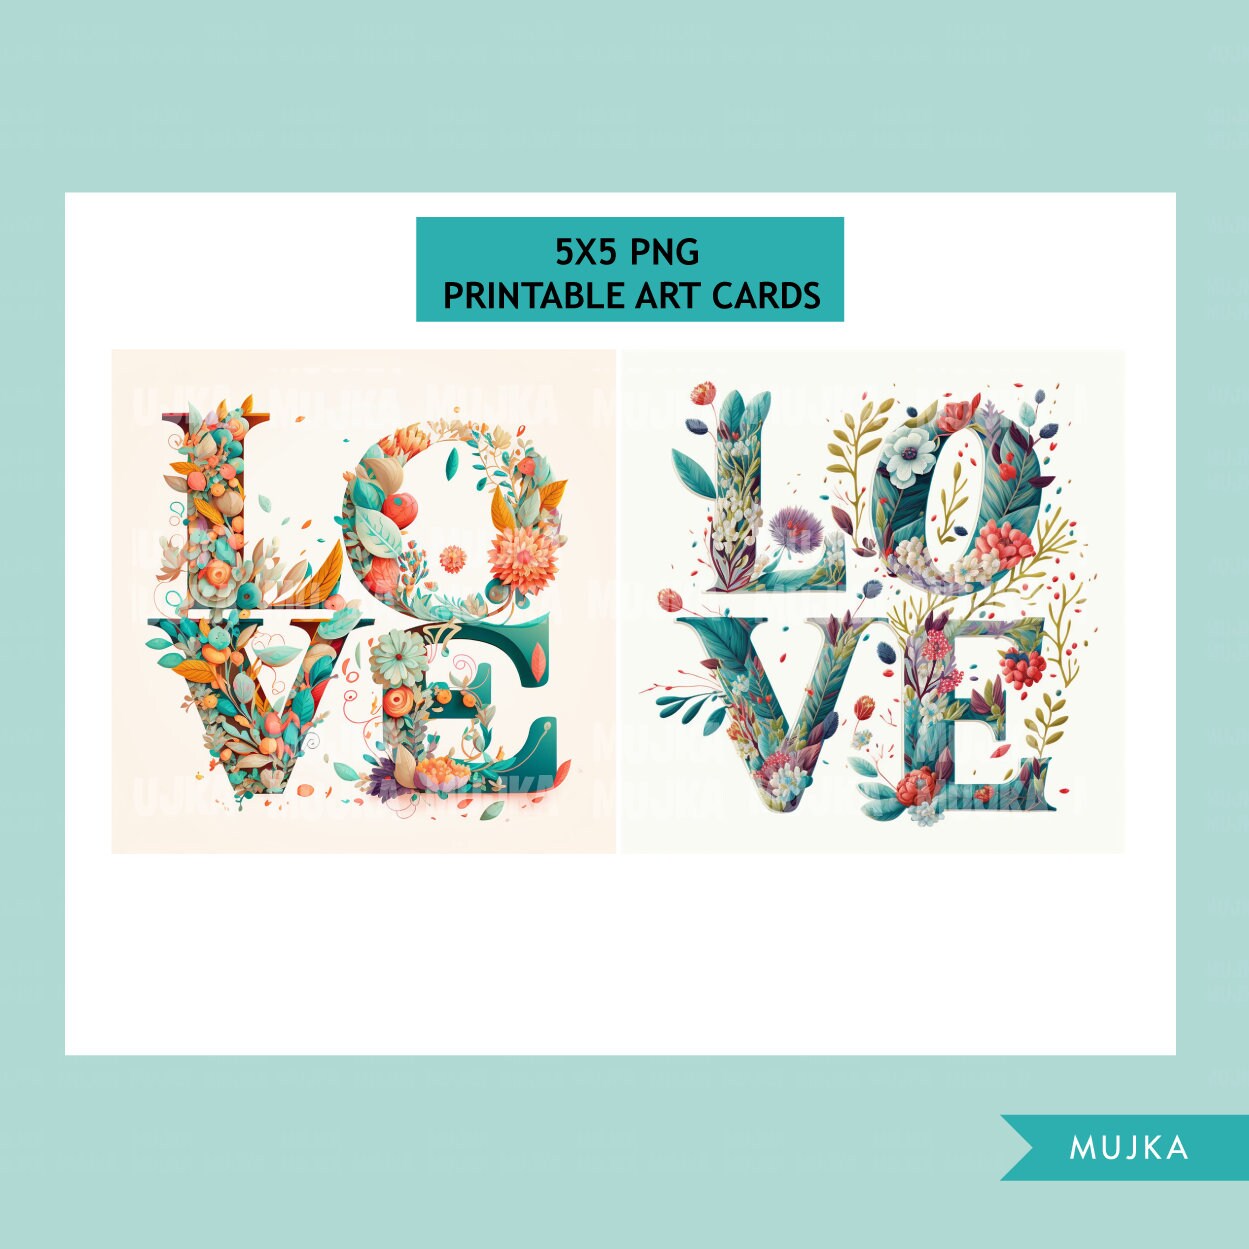 Heart Sticker Art Vinyl Love Decal Mini Labels Valentine Decals